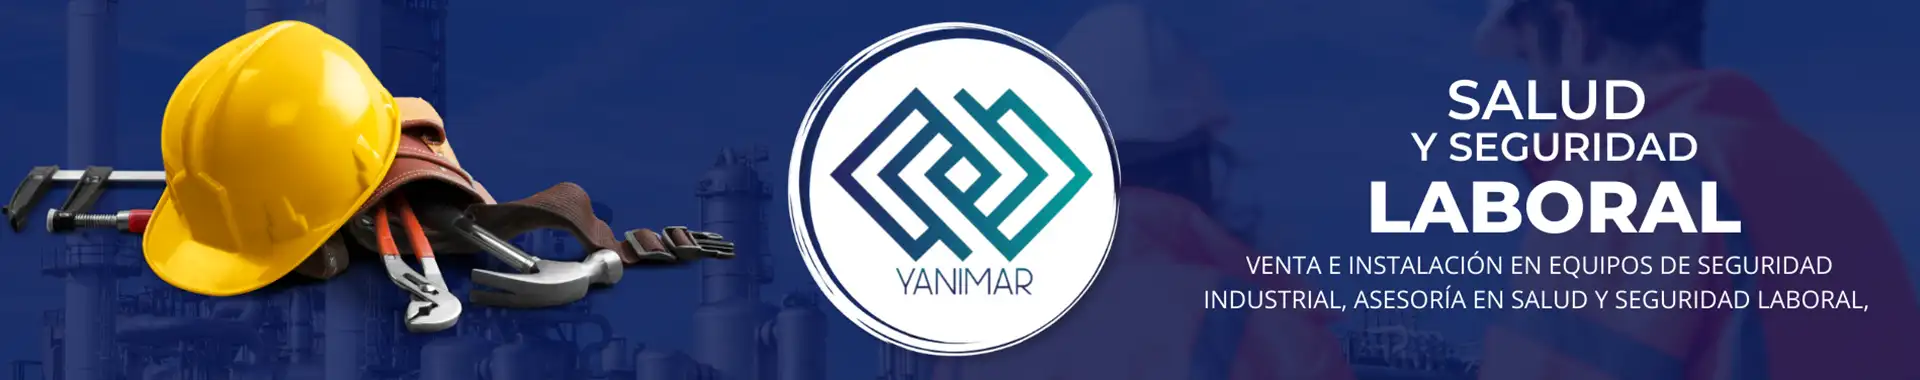 Imagen 4 del perfil de Seguridad Yanimar